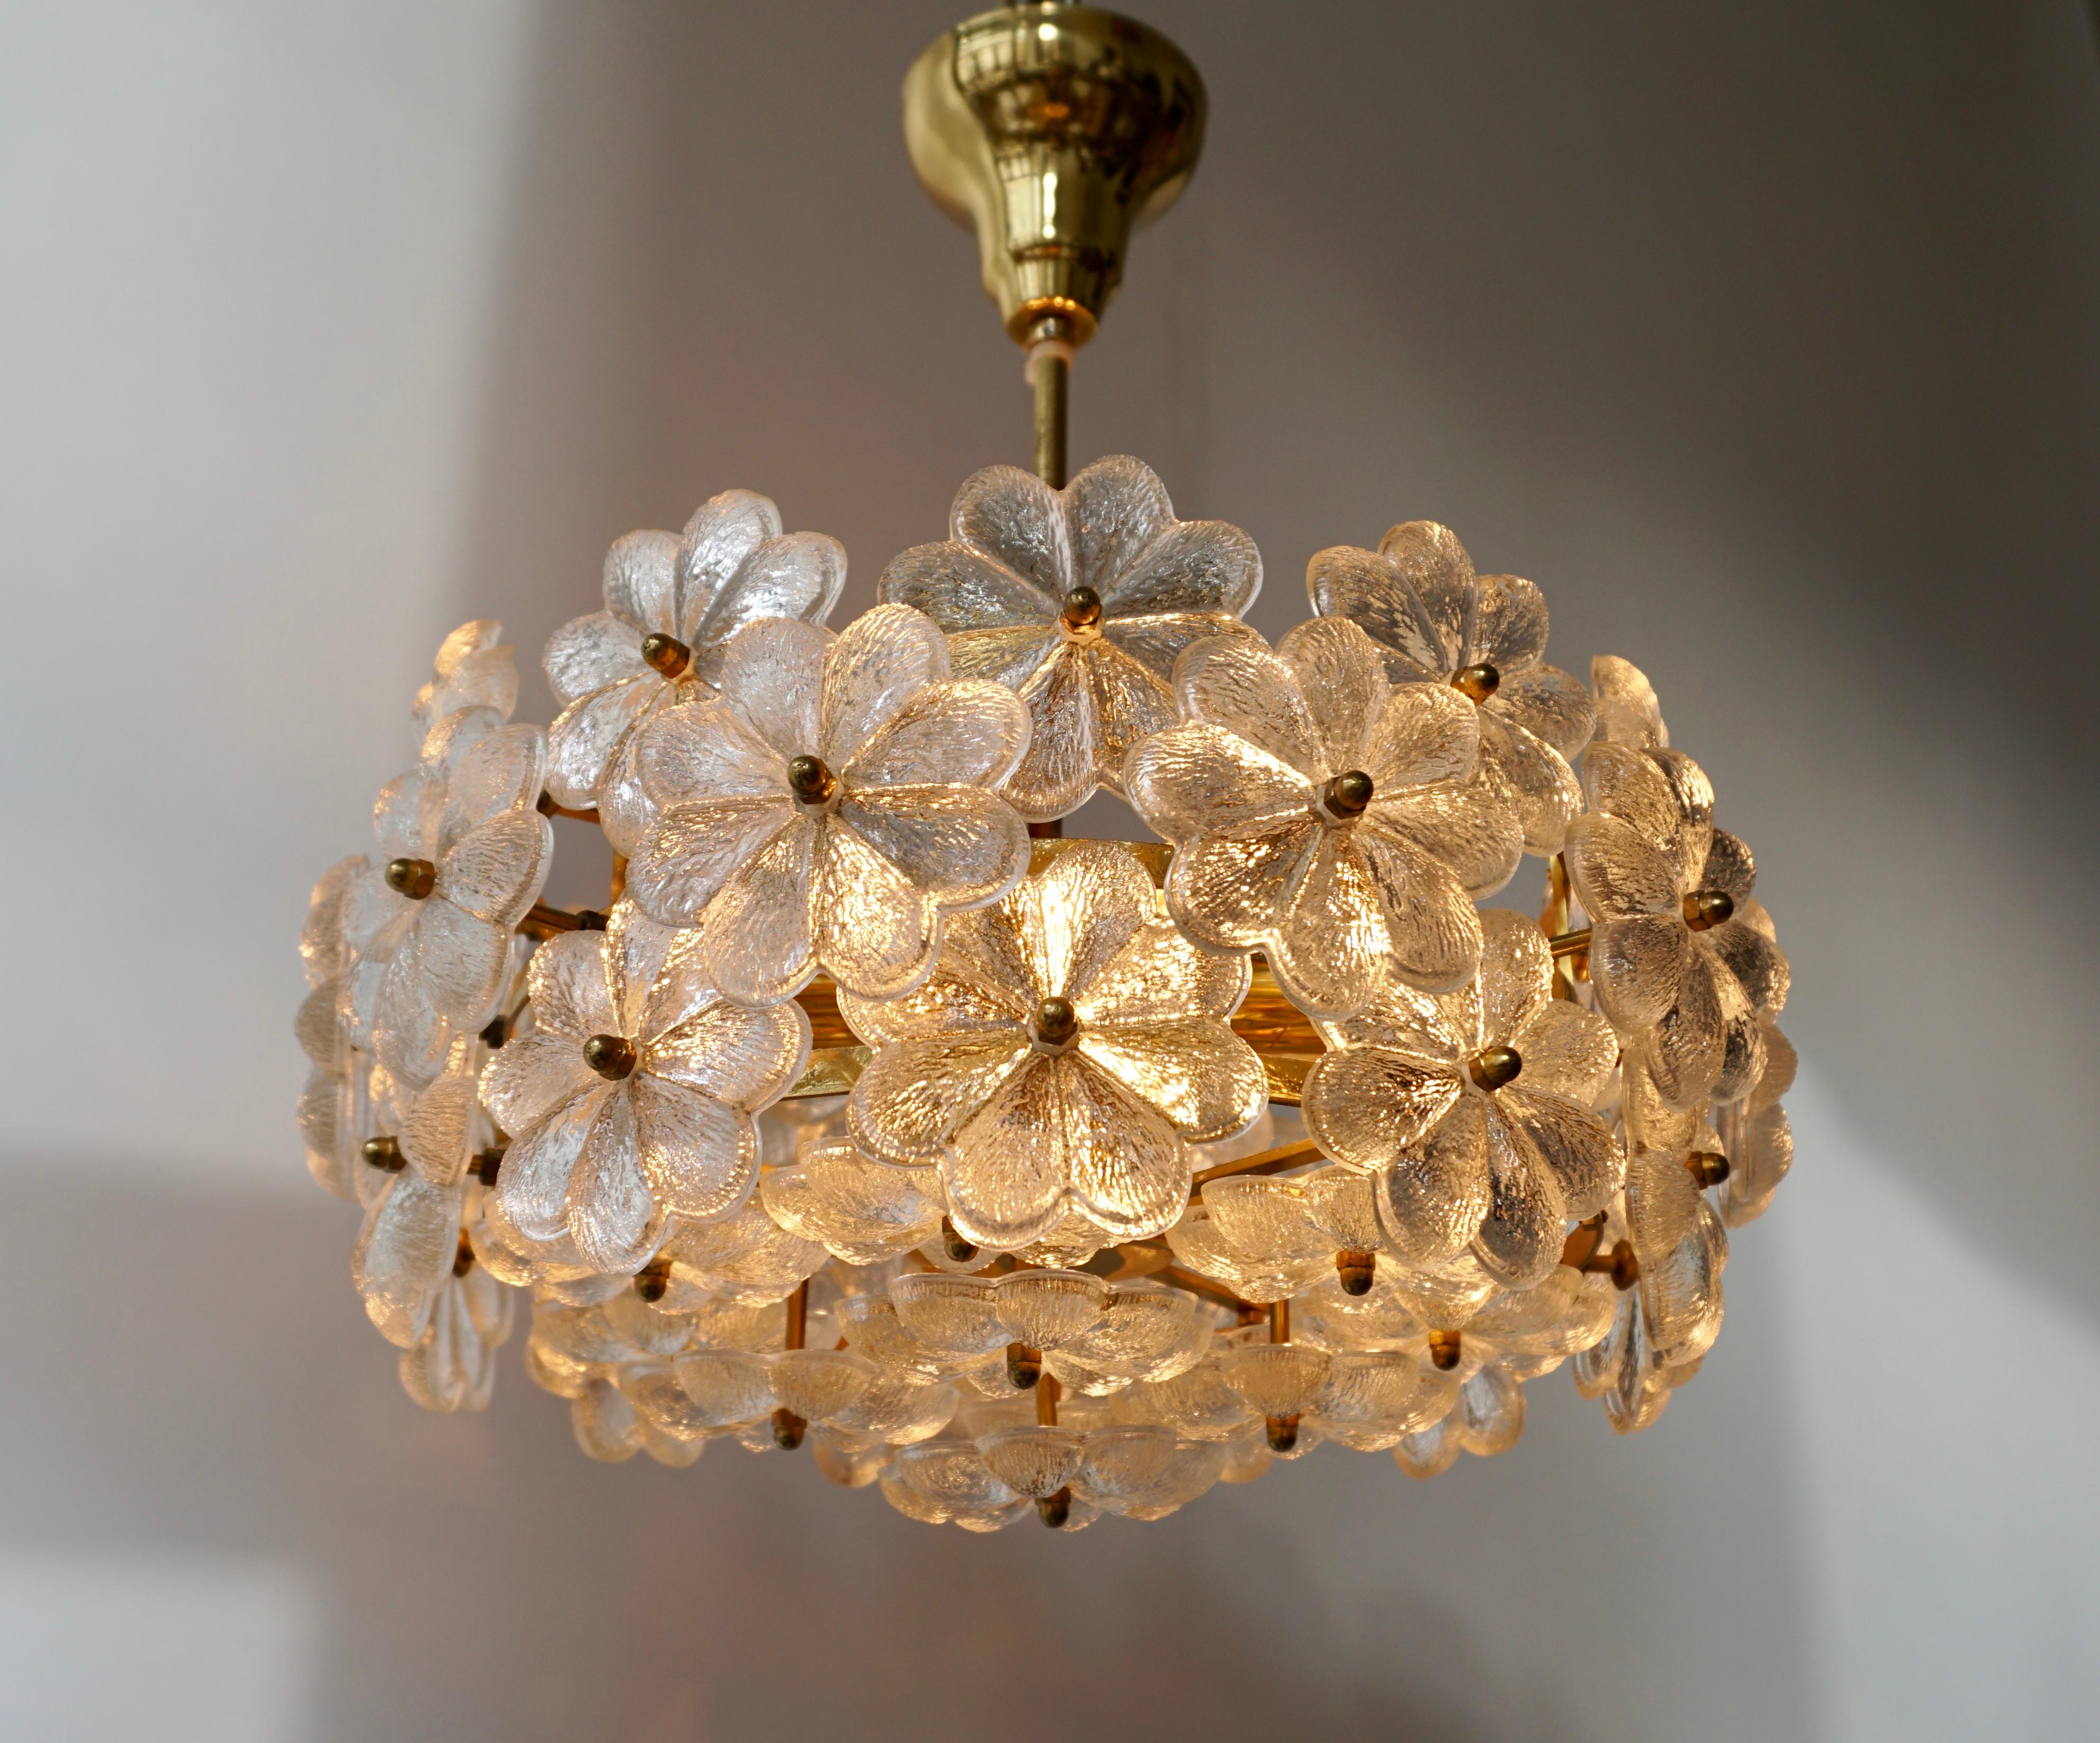 Italian Murano glass and brass floral pendant light.
Diameter 40 cm.
Height fixture 20 cm.
Total height 45 cm.
Weight 7 kg.
Six E14 bulbs.